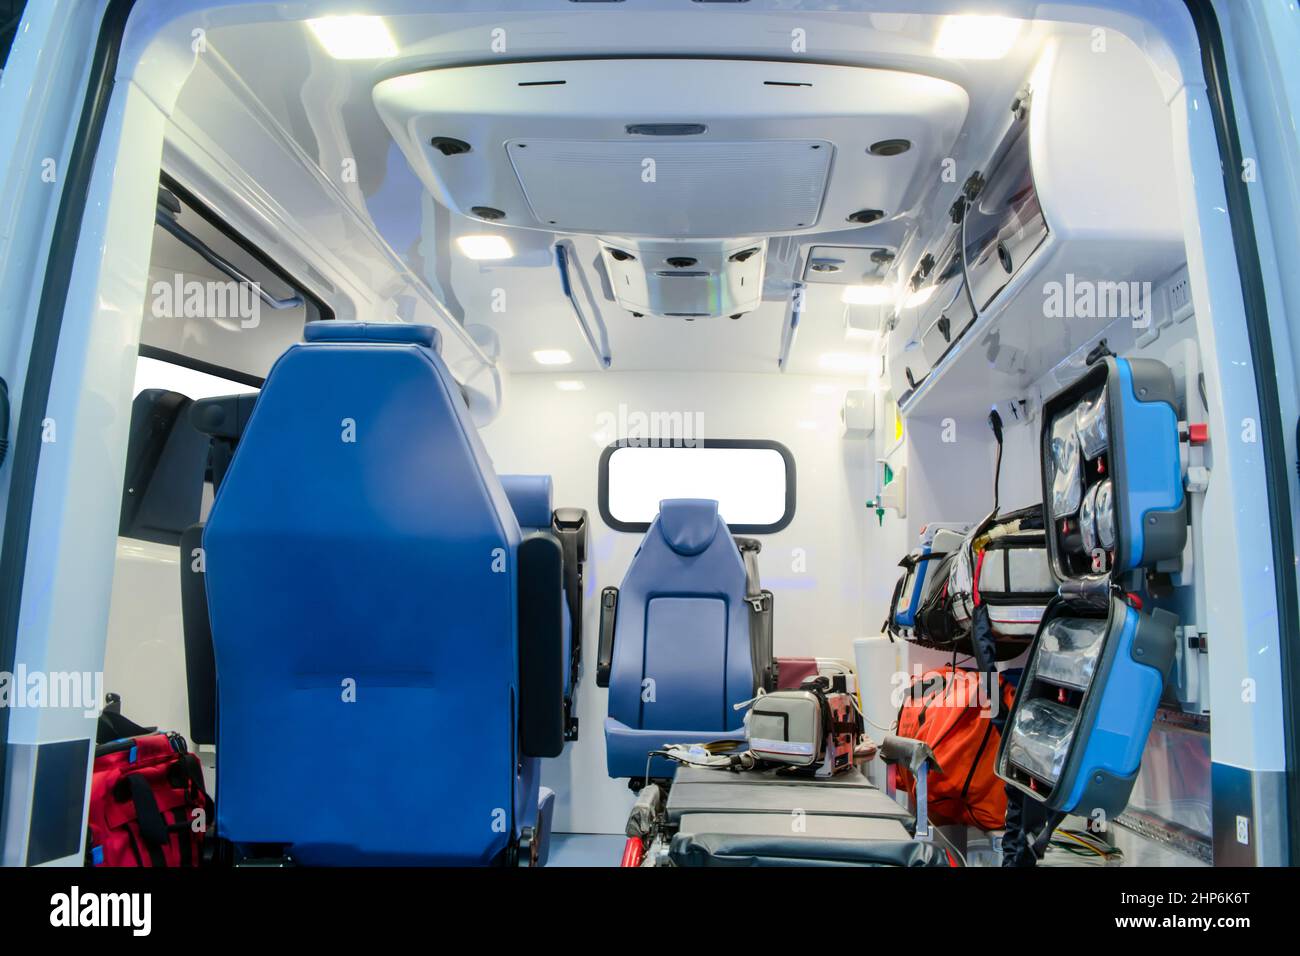 À l'intérieur d'une voiture d'ambulance avec équipement médical pour aider les patients avant leur livraison à l'hôpital Banque D'Images